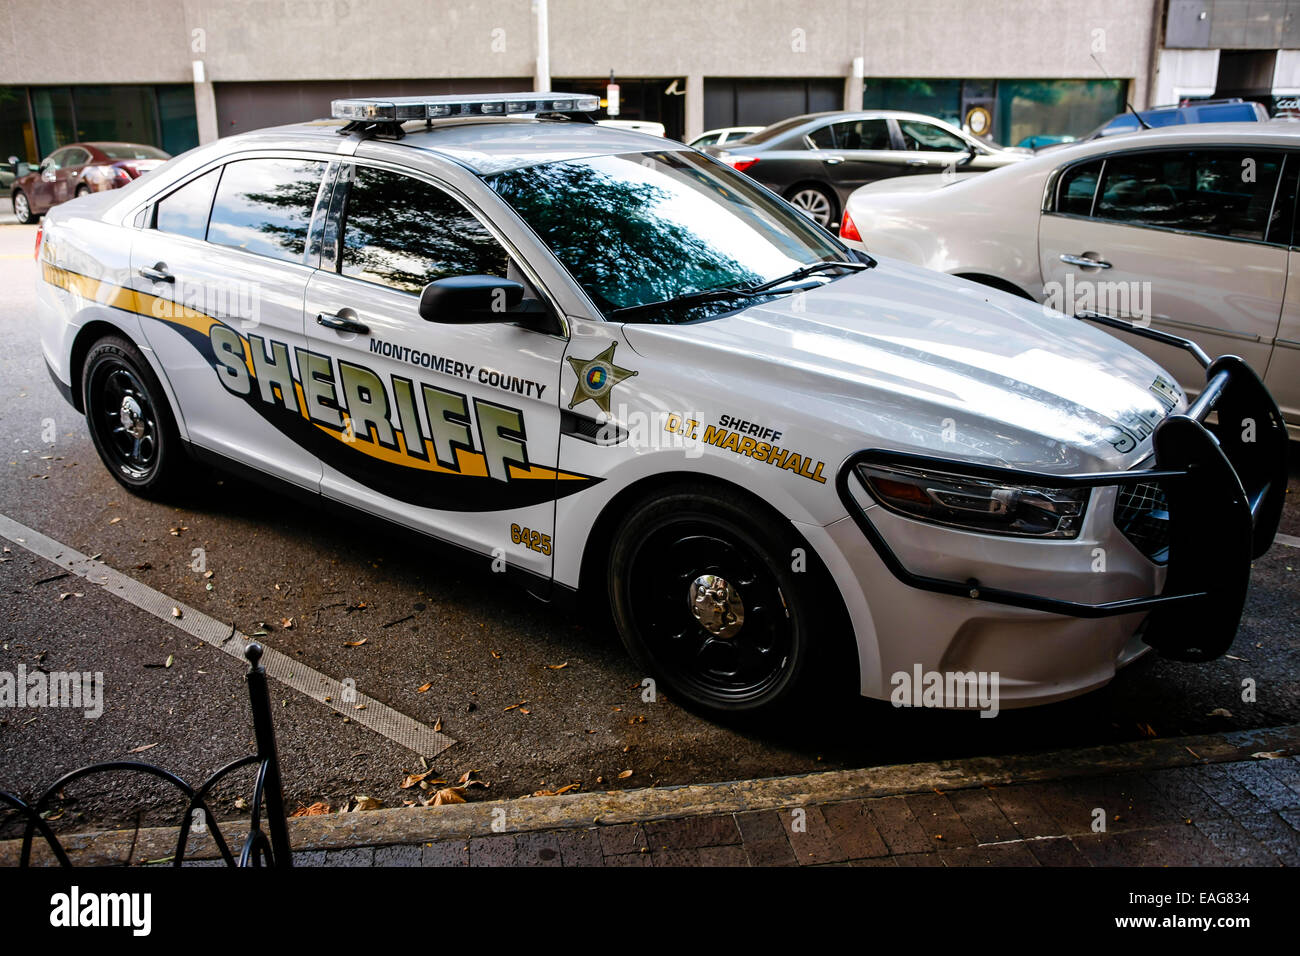 Sheriff car -Fotos und -Bildmaterial in hoher Auflösung - Seite 3 - Alamy